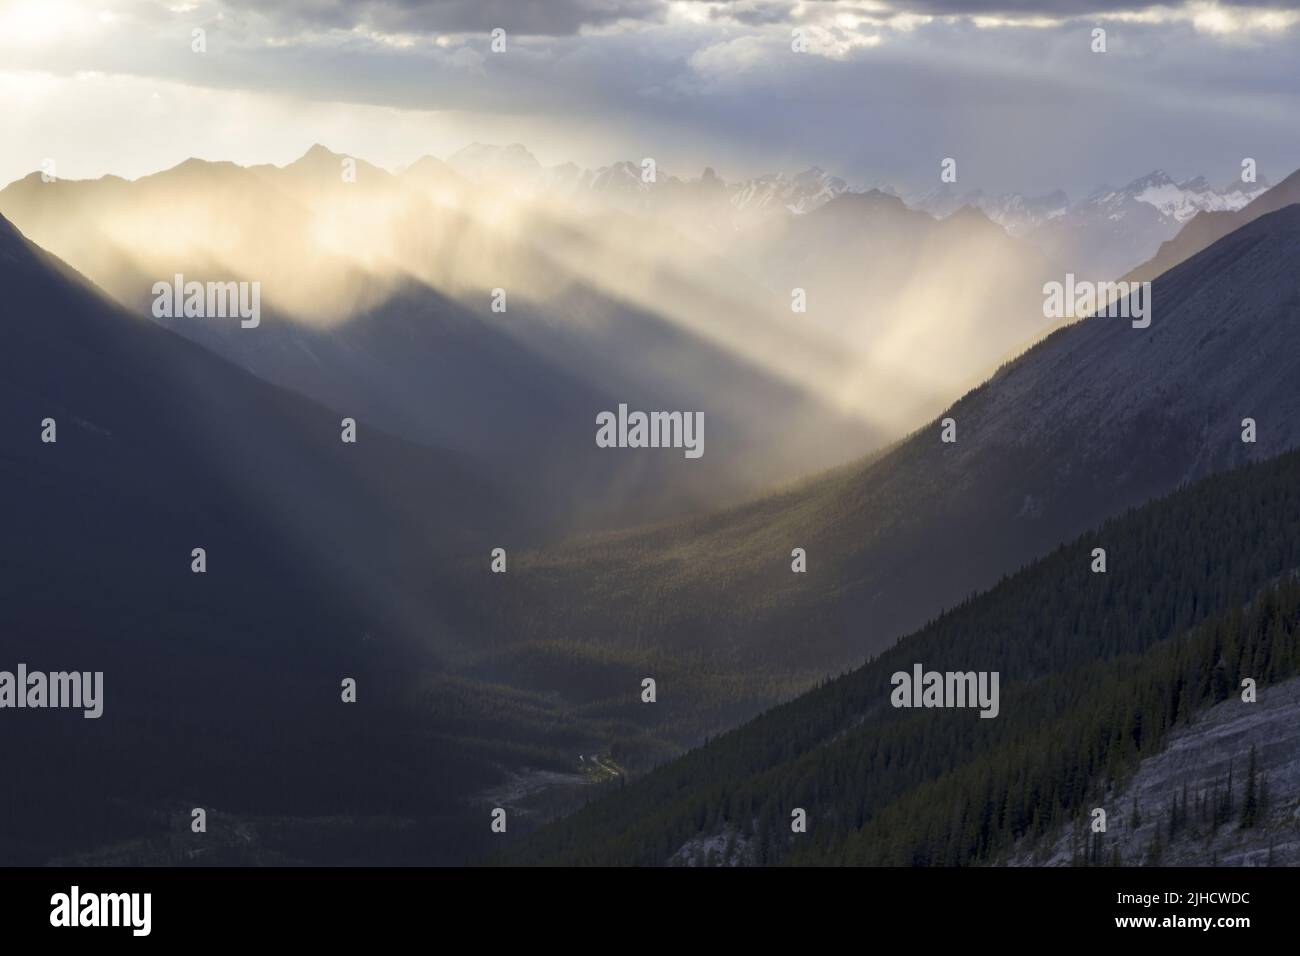 Schatten und Licht stehen im Kontrast zur Stormy Sky Horizon Landscape oberhalb des Kananaskis Country Valley, den Ausläufern der kanadischen Rocky Mountains in Alberta Stockfoto